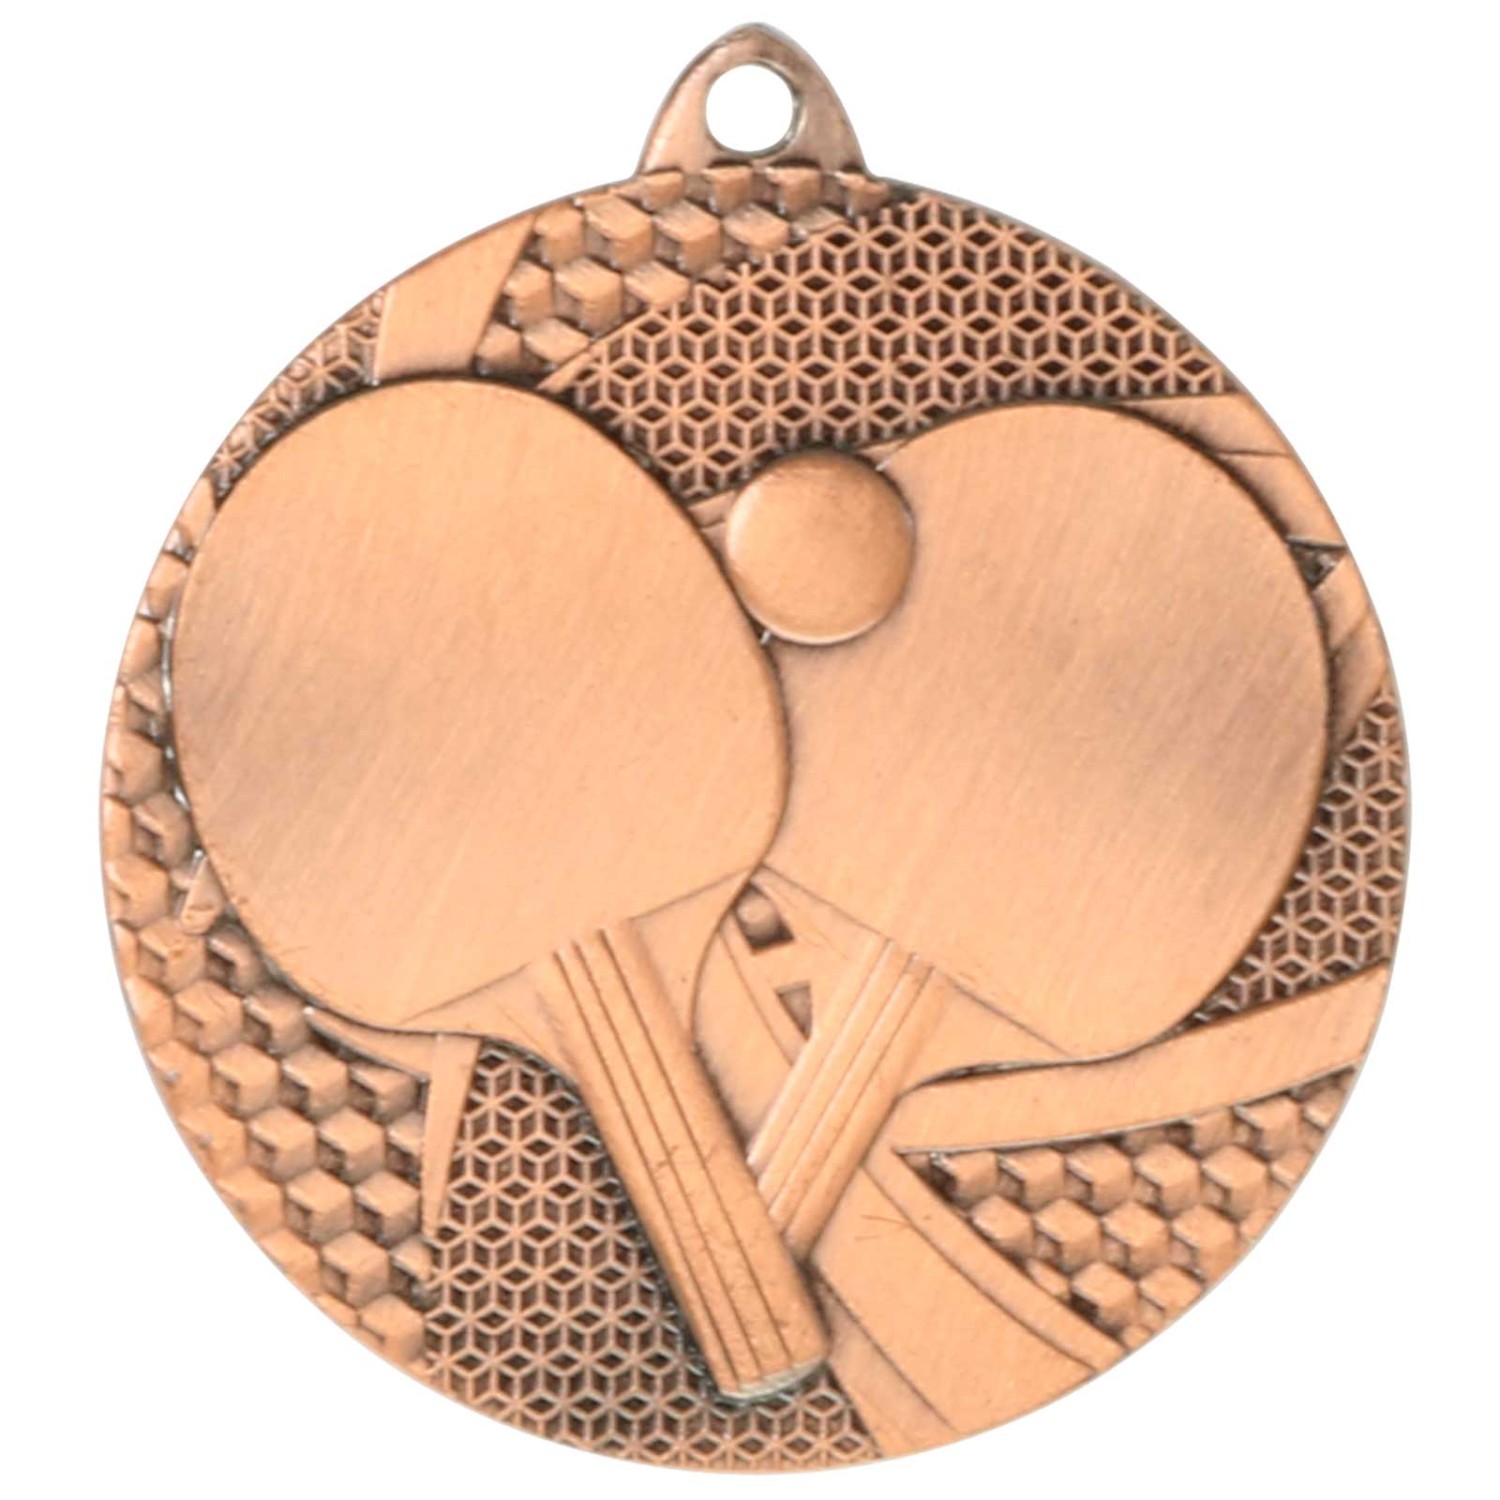 3. Foto Medaille Tischtennis Tischtennis-Medaillen rund gold silber bronze (Sorte: Set je 1x gold / silber / bronze)